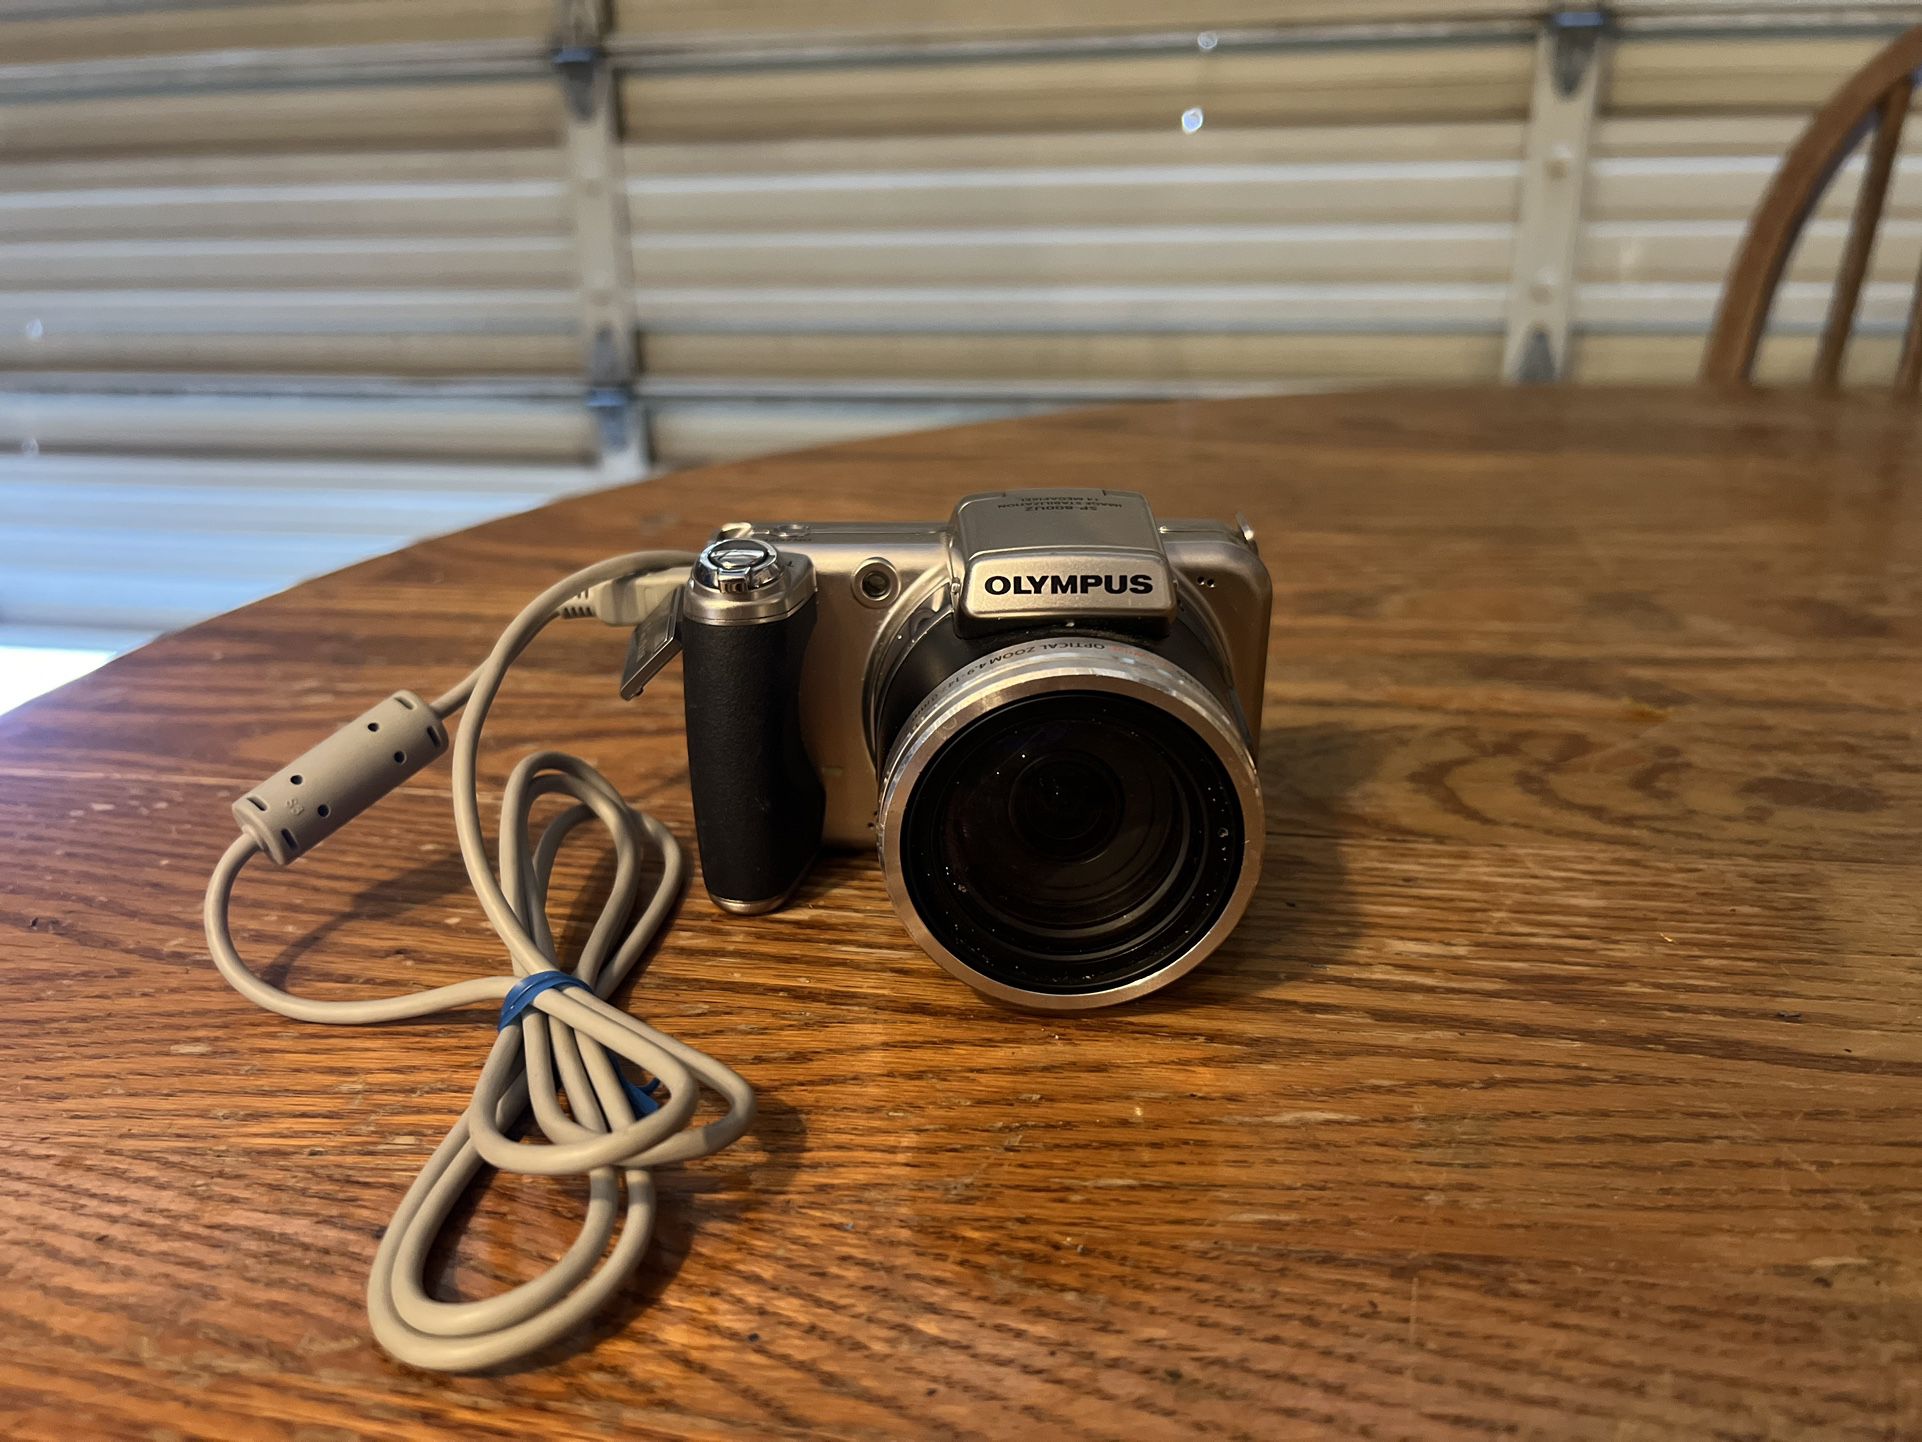 Olympus SP-800Uz 14MP Camera 